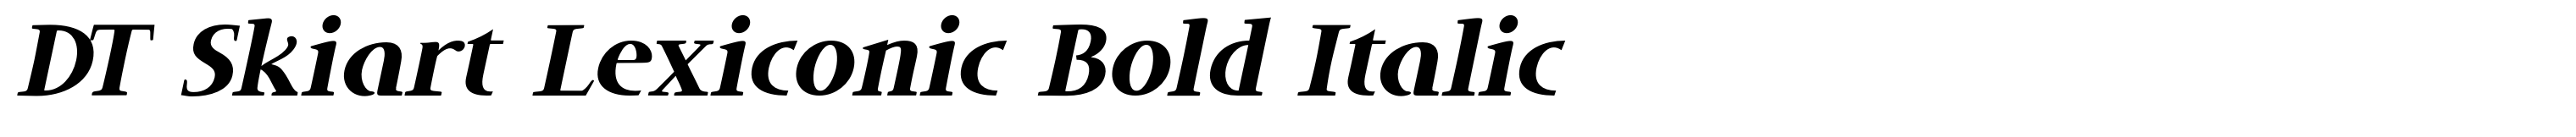 DT Skiart Lexiconic Bold Italic